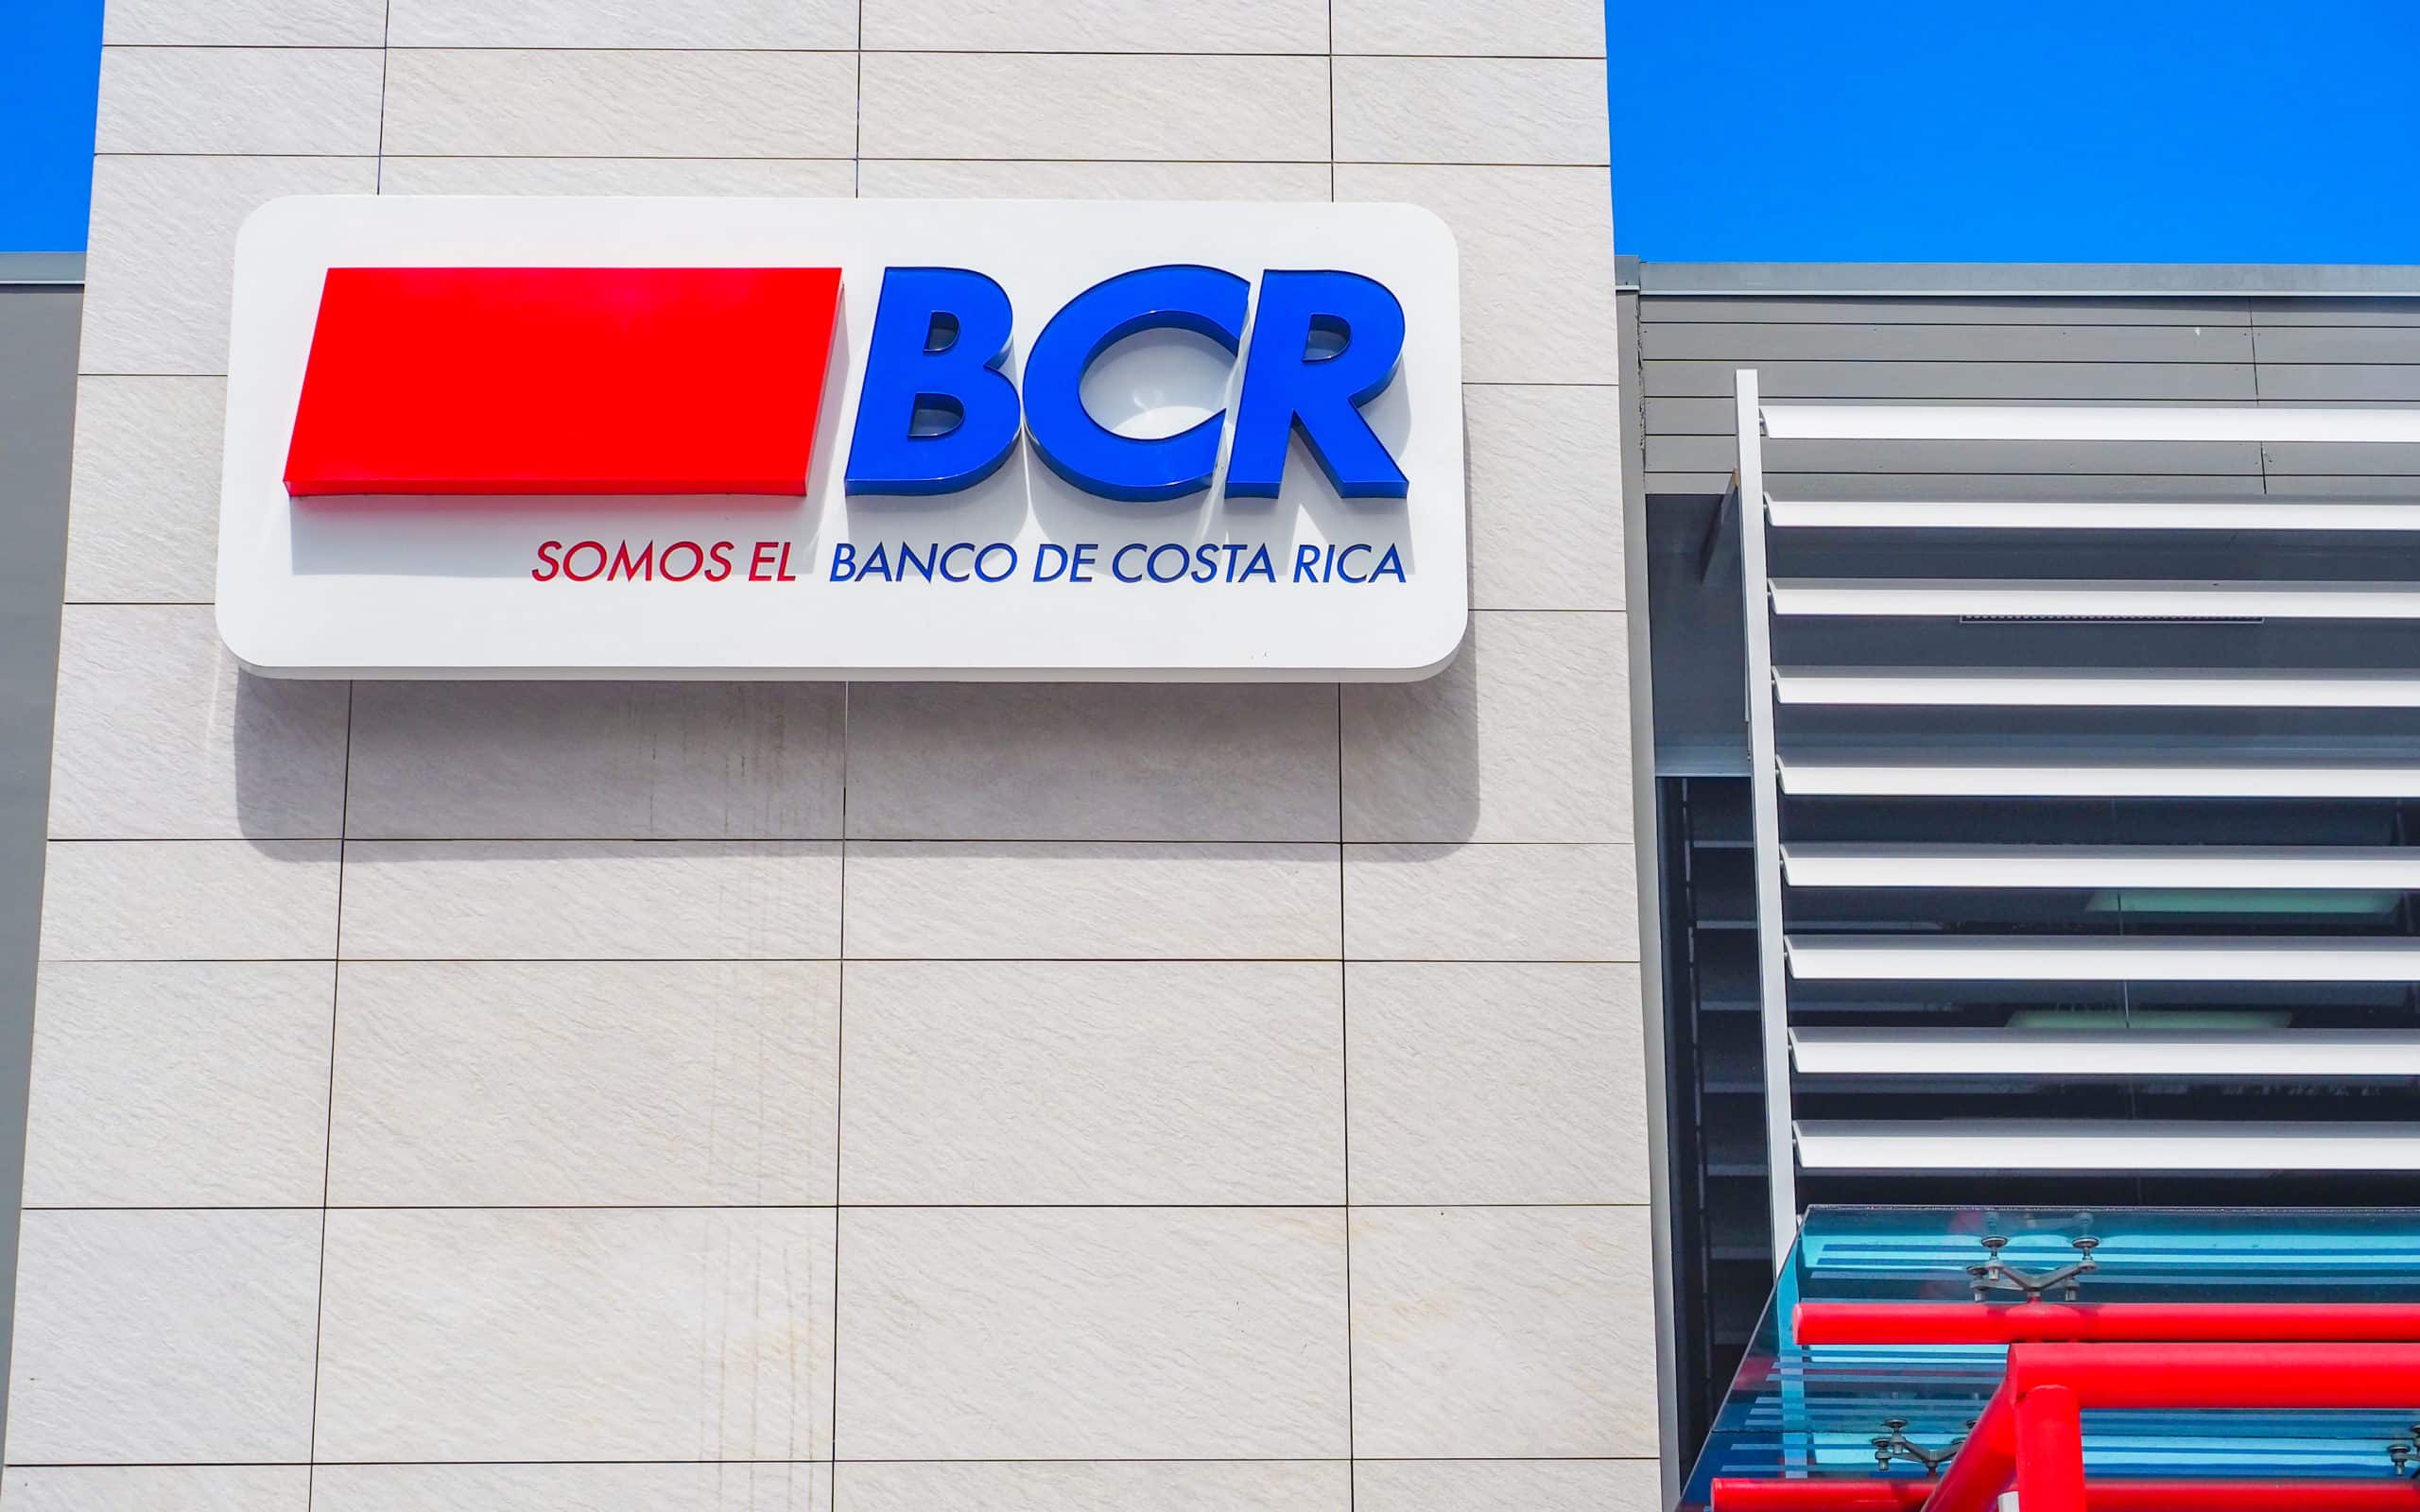 “El 15 de marzo lo vamos a presentar”: Nogui Acosta avisa sobre nuevo proyecto para vender el BCR